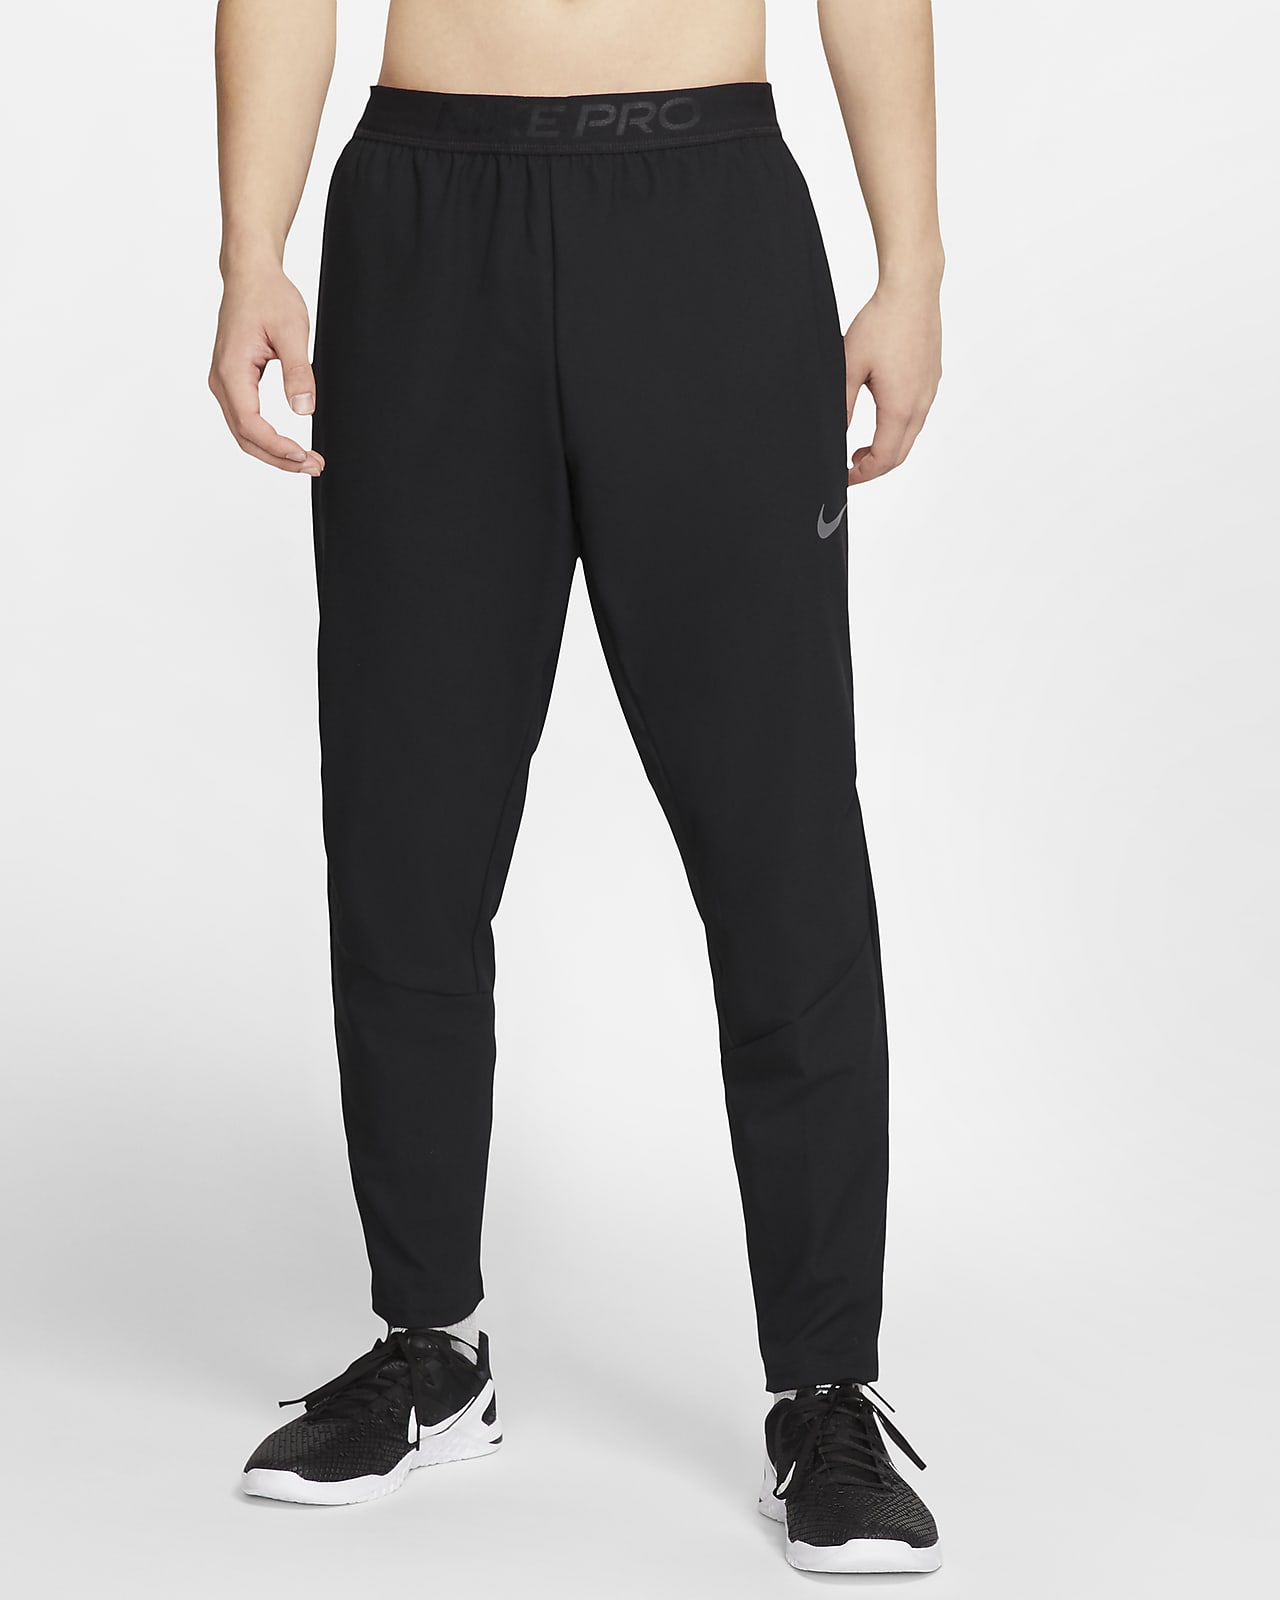 Pantalon de training Nike Flex pour Homme